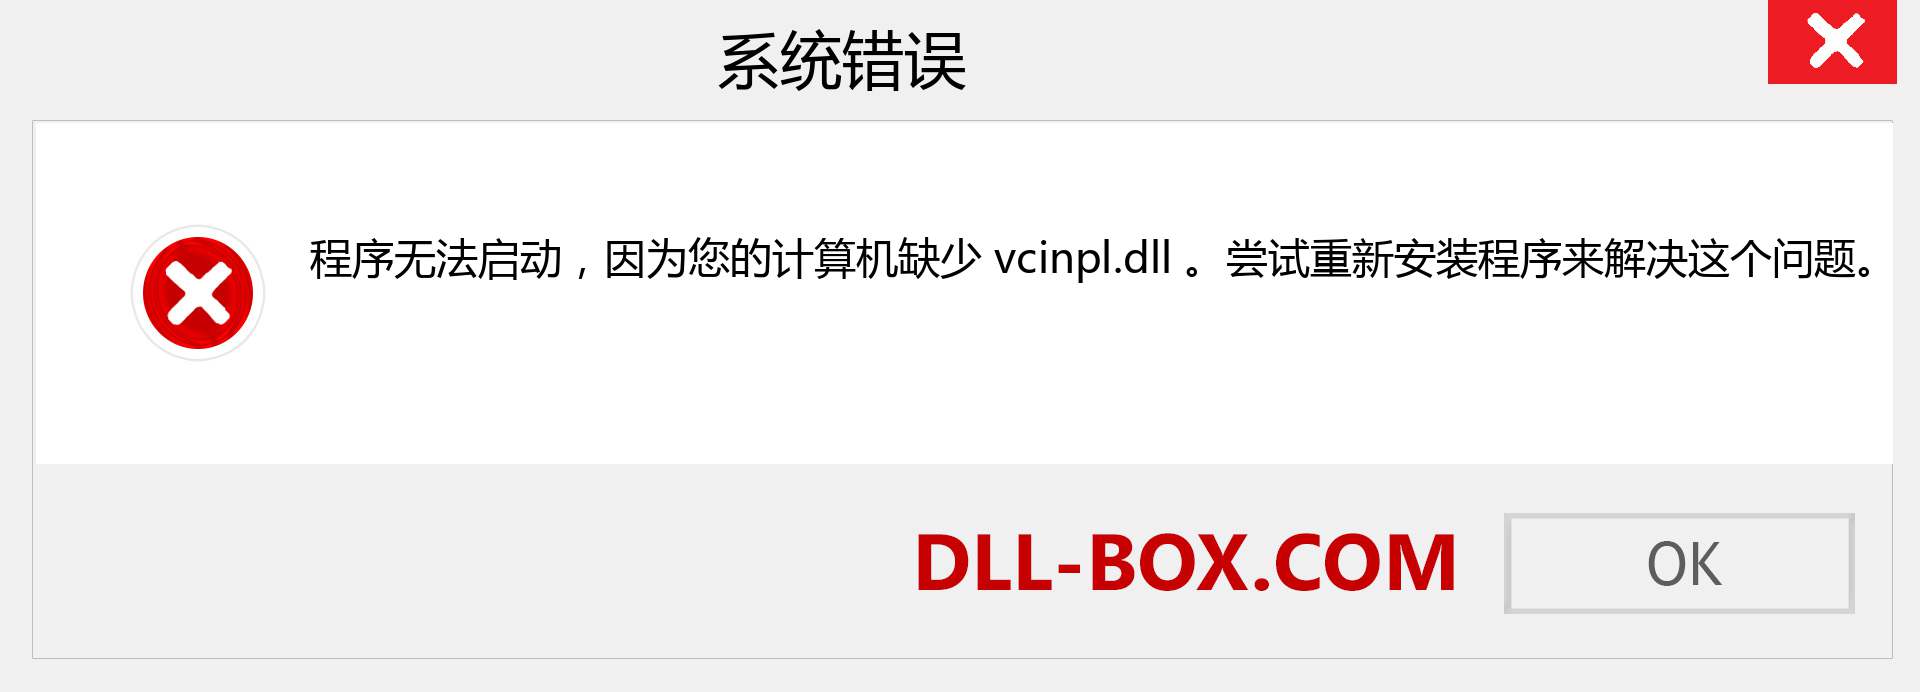 vcinpl.dll 文件丢失？。 适用于 Windows 7、8、10 的下载 - 修复 Windows、照片、图像上的 vcinpl dll 丢失错误